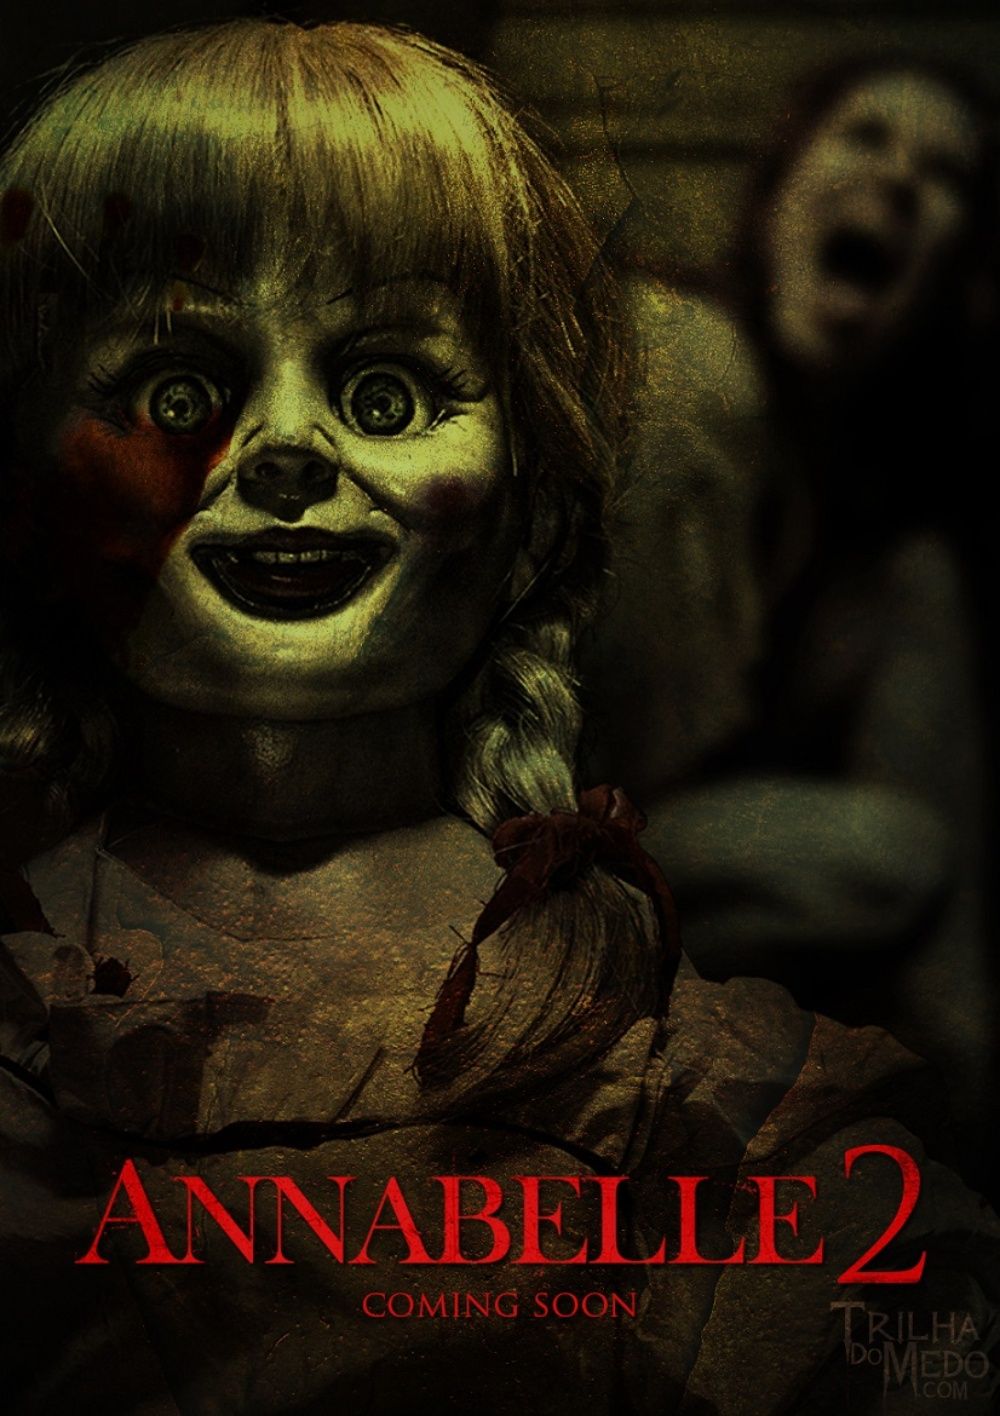 Watch online full movie Annabelle 2 HD MOVIEZ KINGDOM